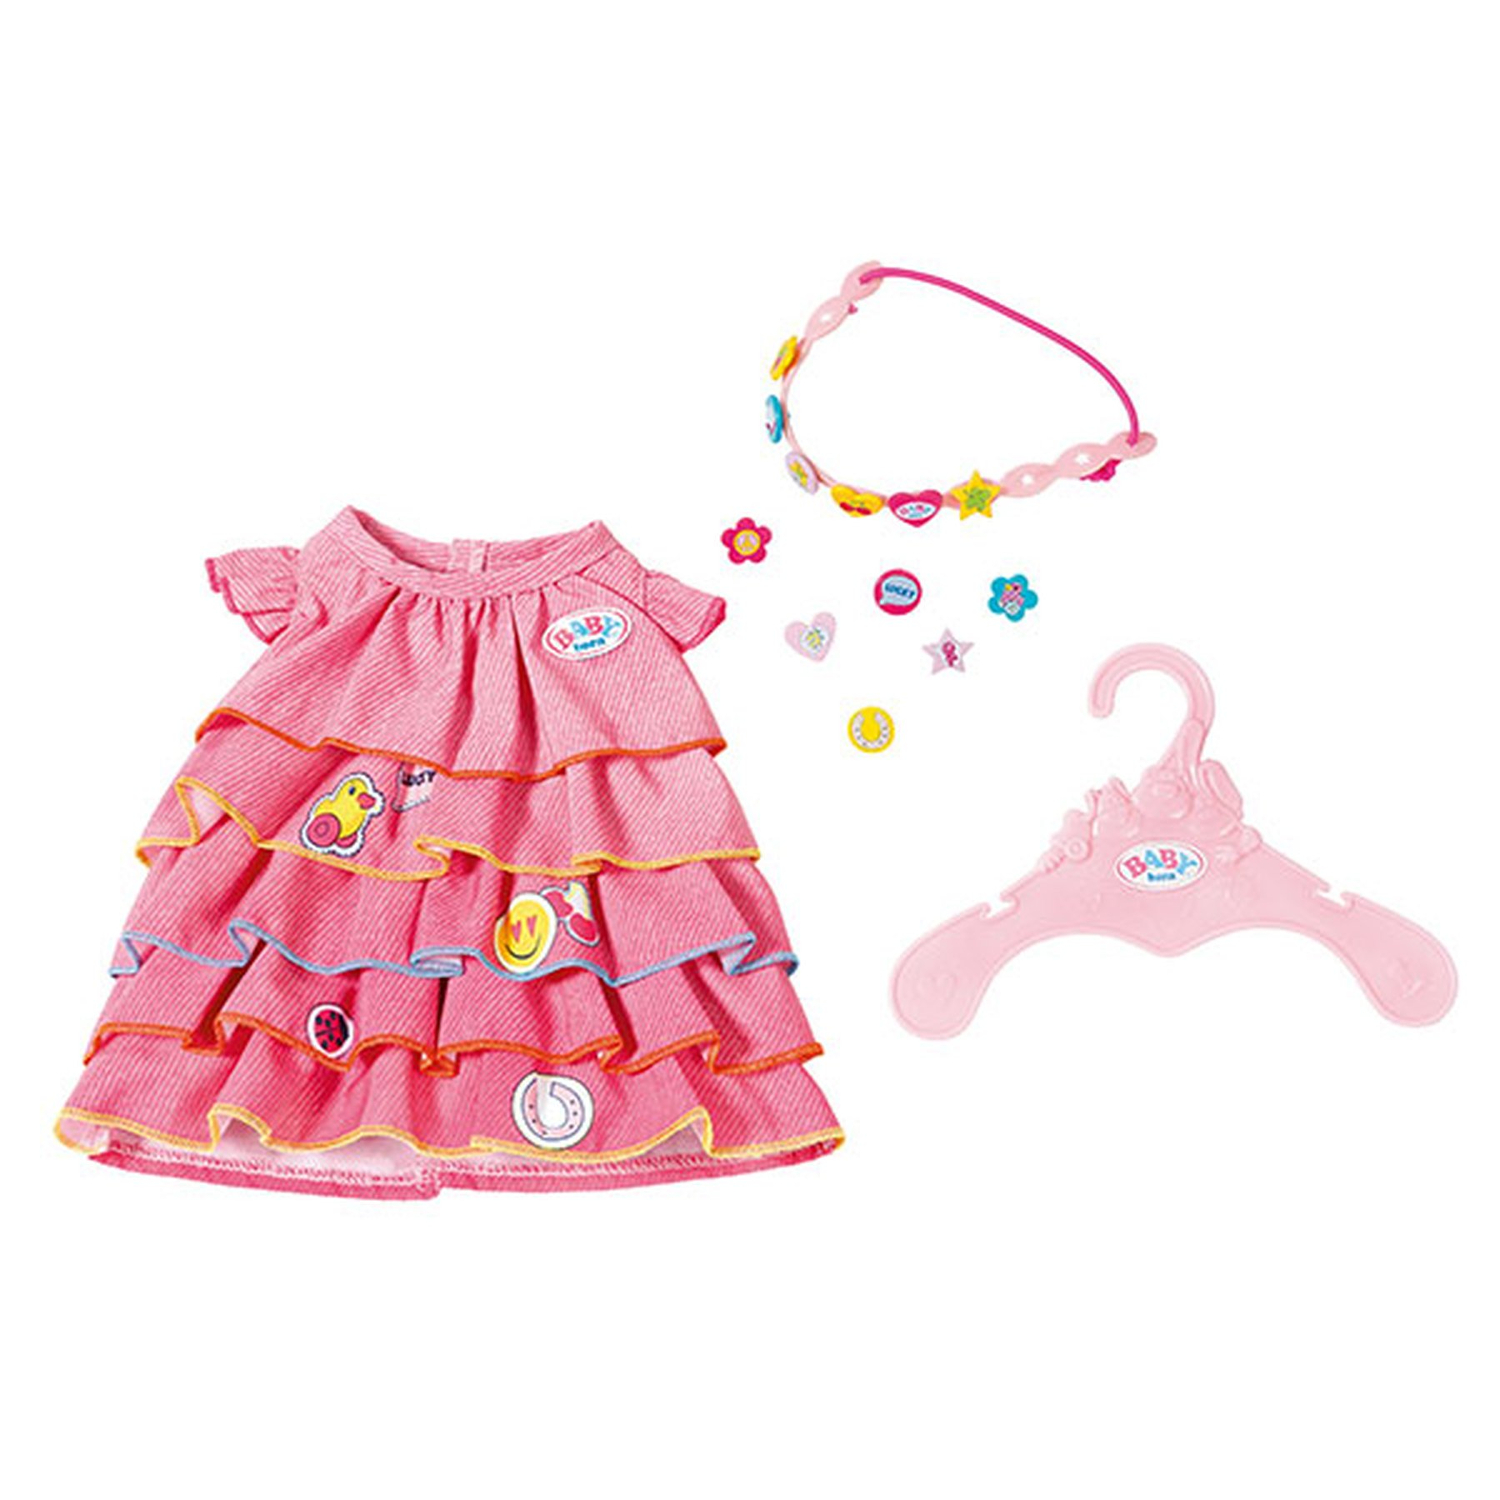 Одежда Baby born 824-481 Платье ярко розовое и ободок-украшение